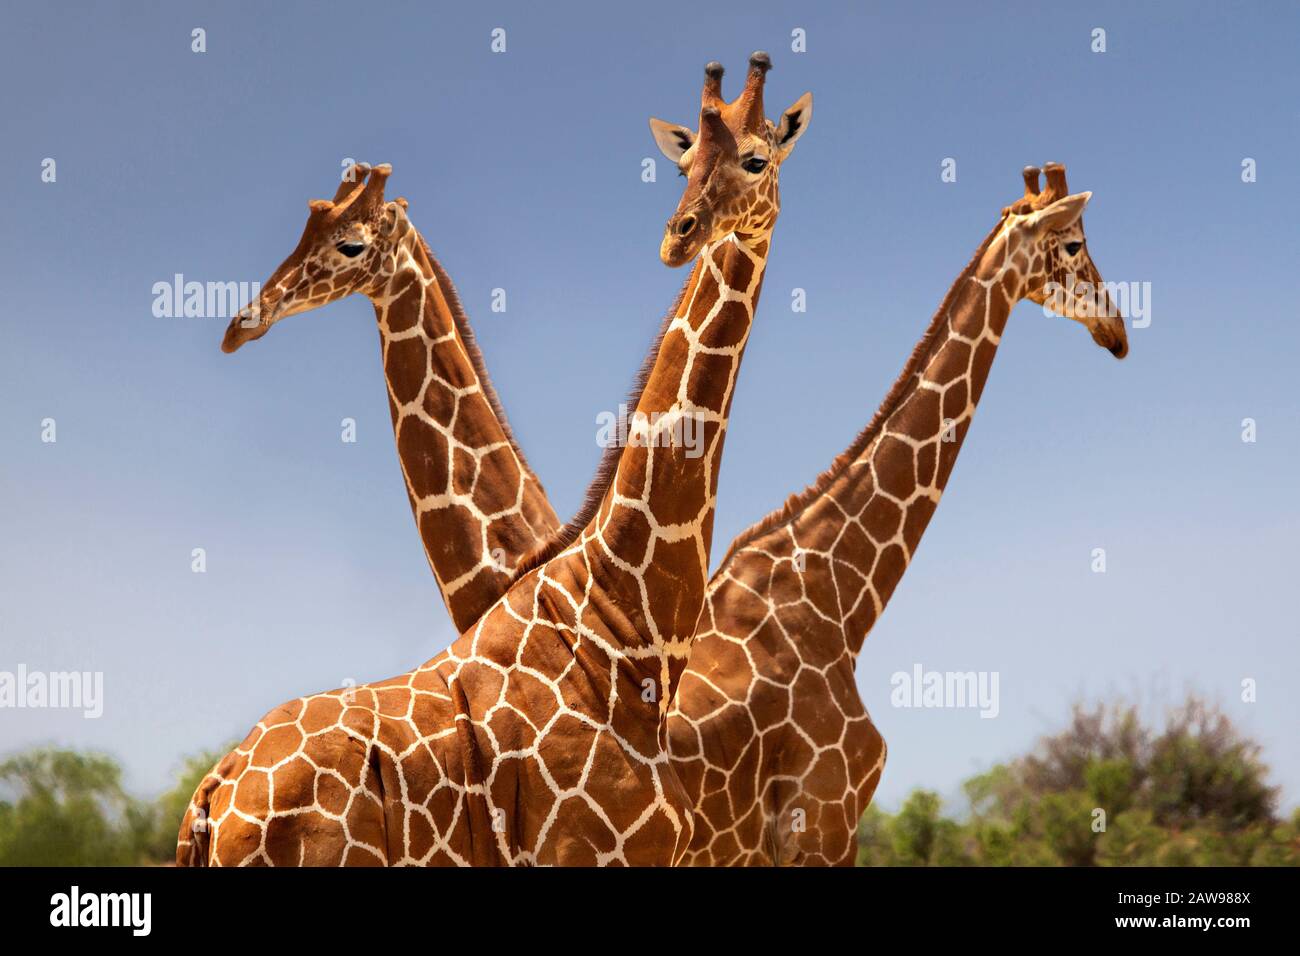 Reticulated  giraffes in Samburu, Kenya Stock Photo